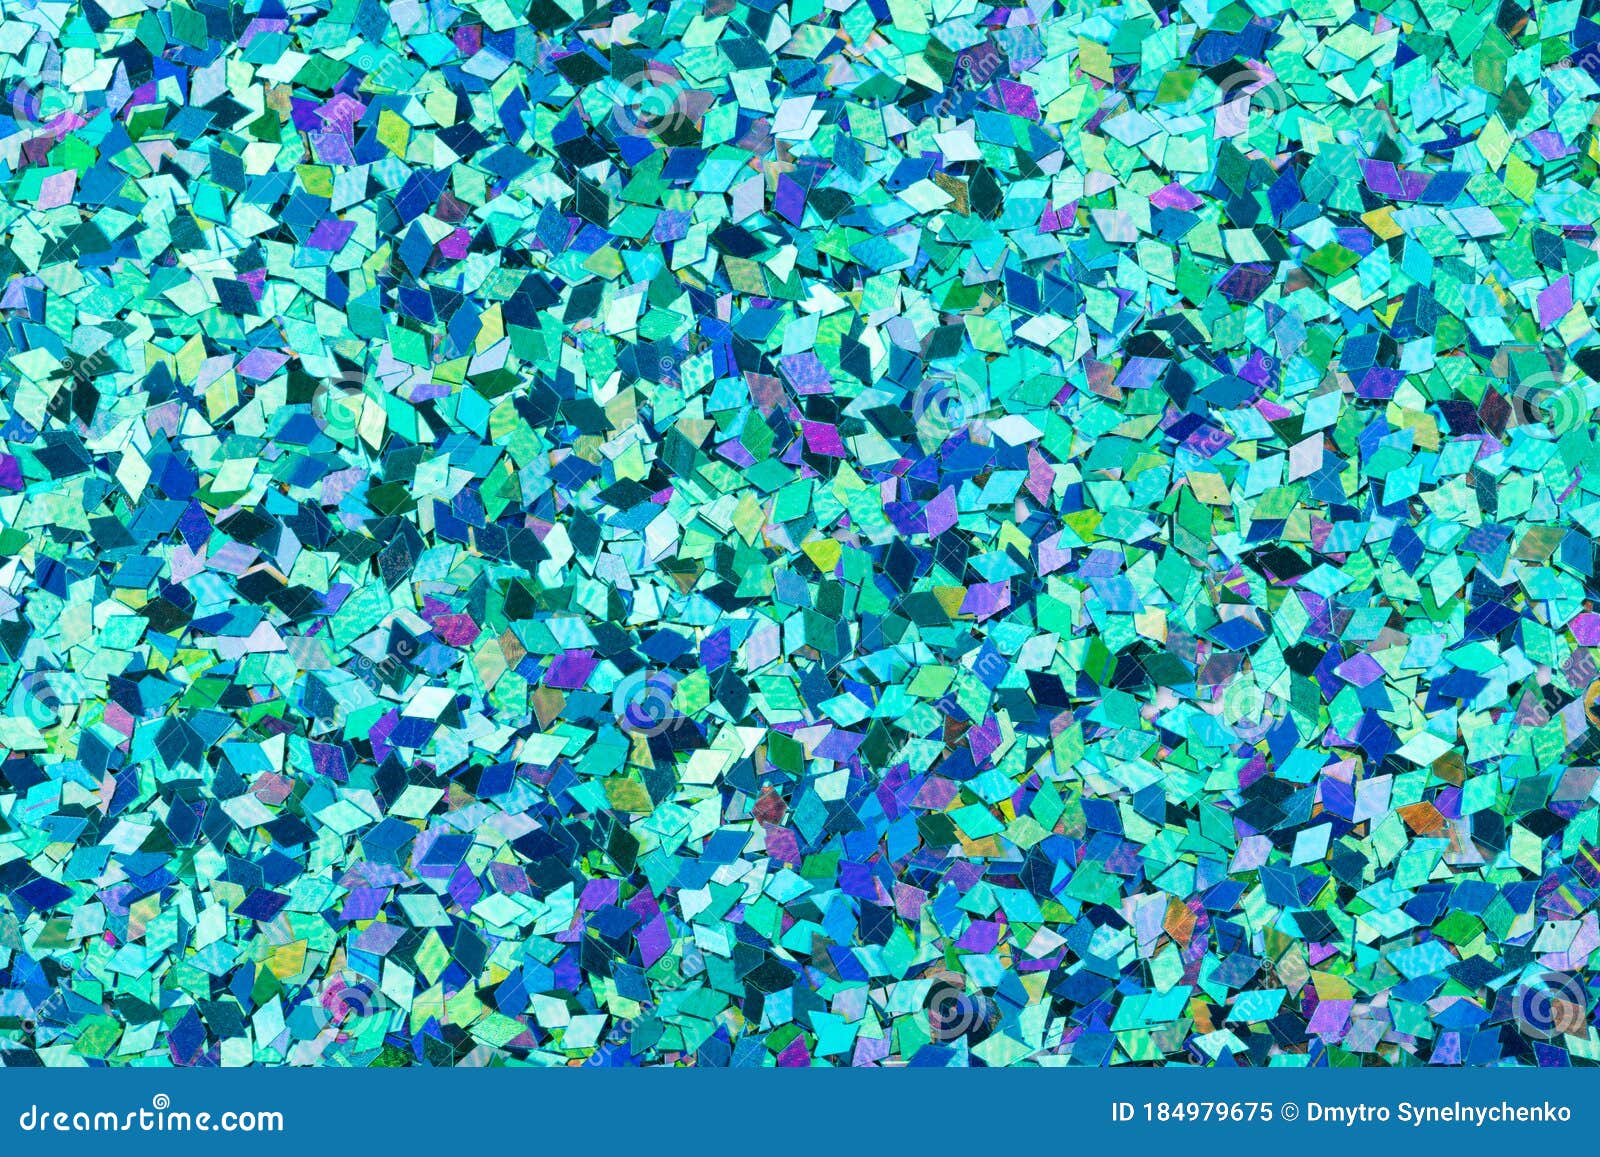 sammensværgelse Urskive melodisk Contrast Holographic Glitter Texture, Blue Wallpaper for Excellent Design  View. Stock Image - Image of interior, holiday: 184979675